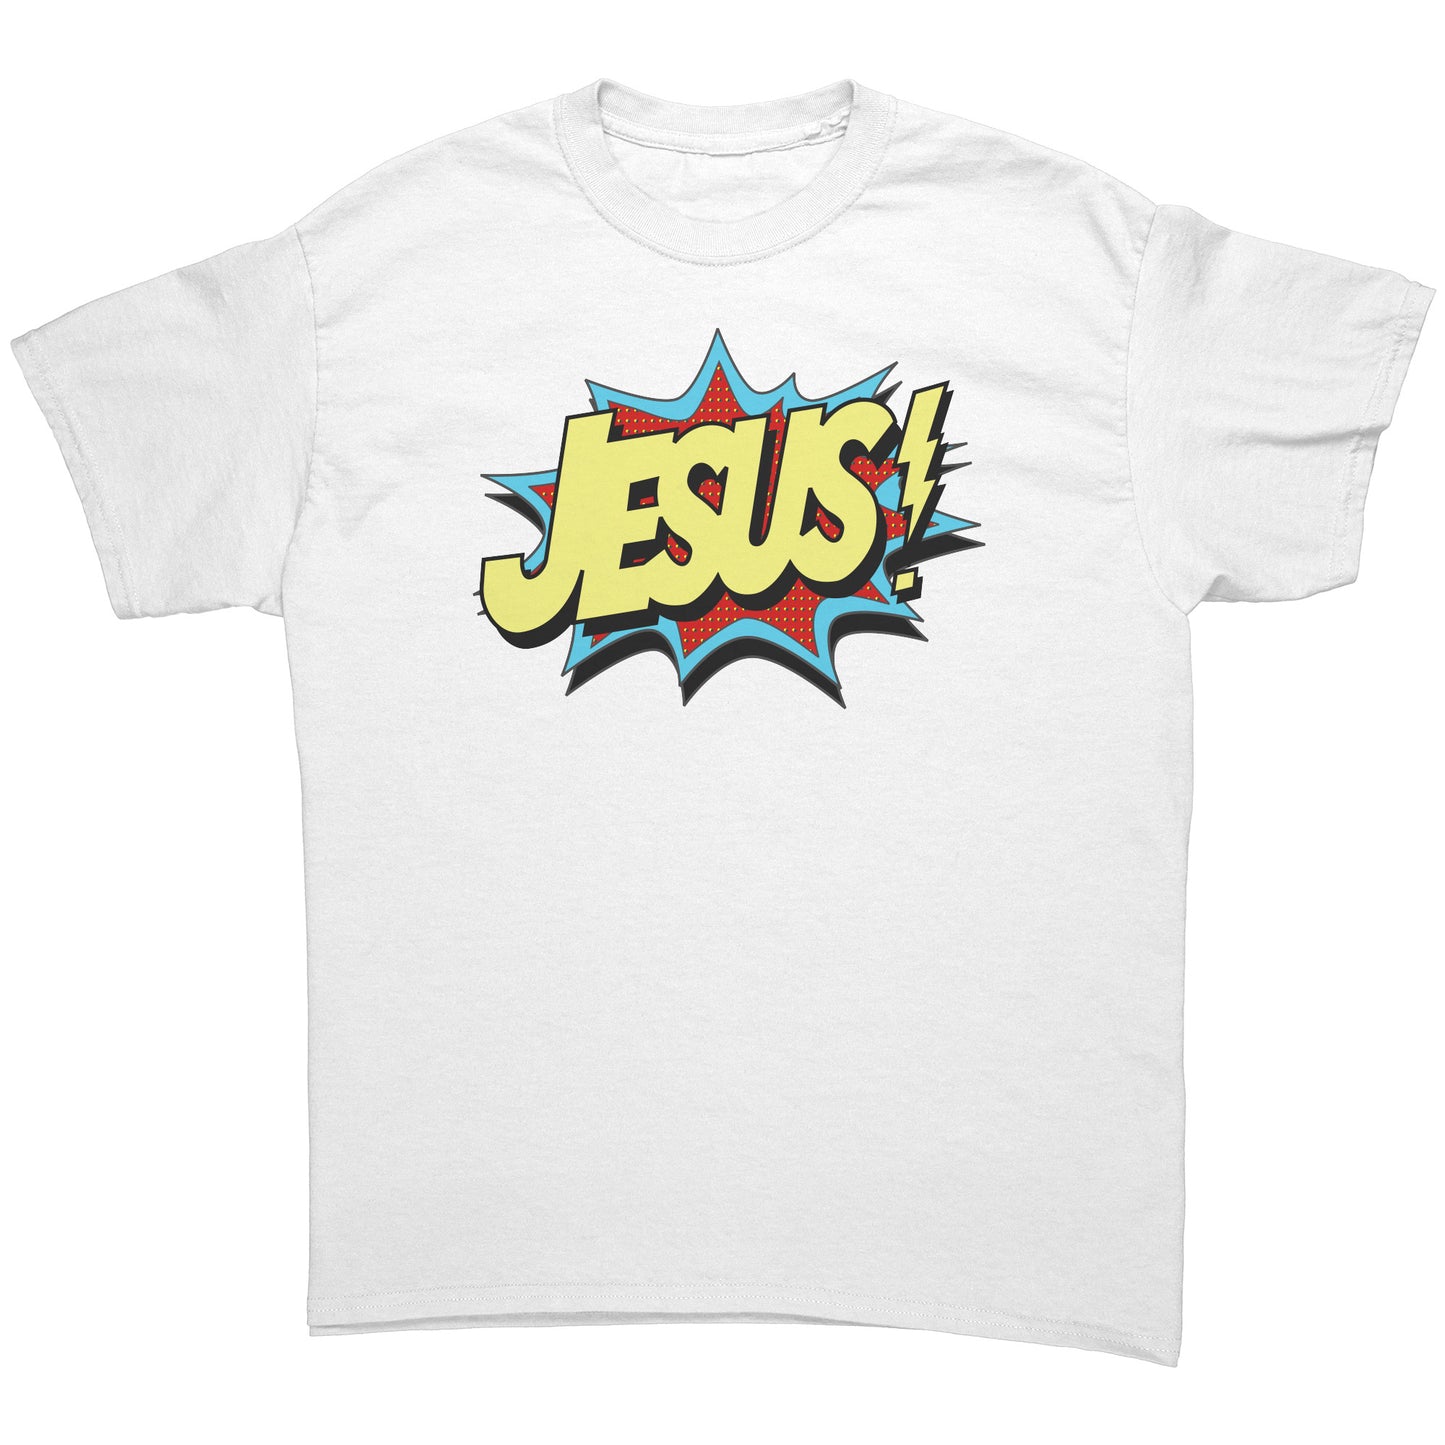 Jesus Men's T-Shirt